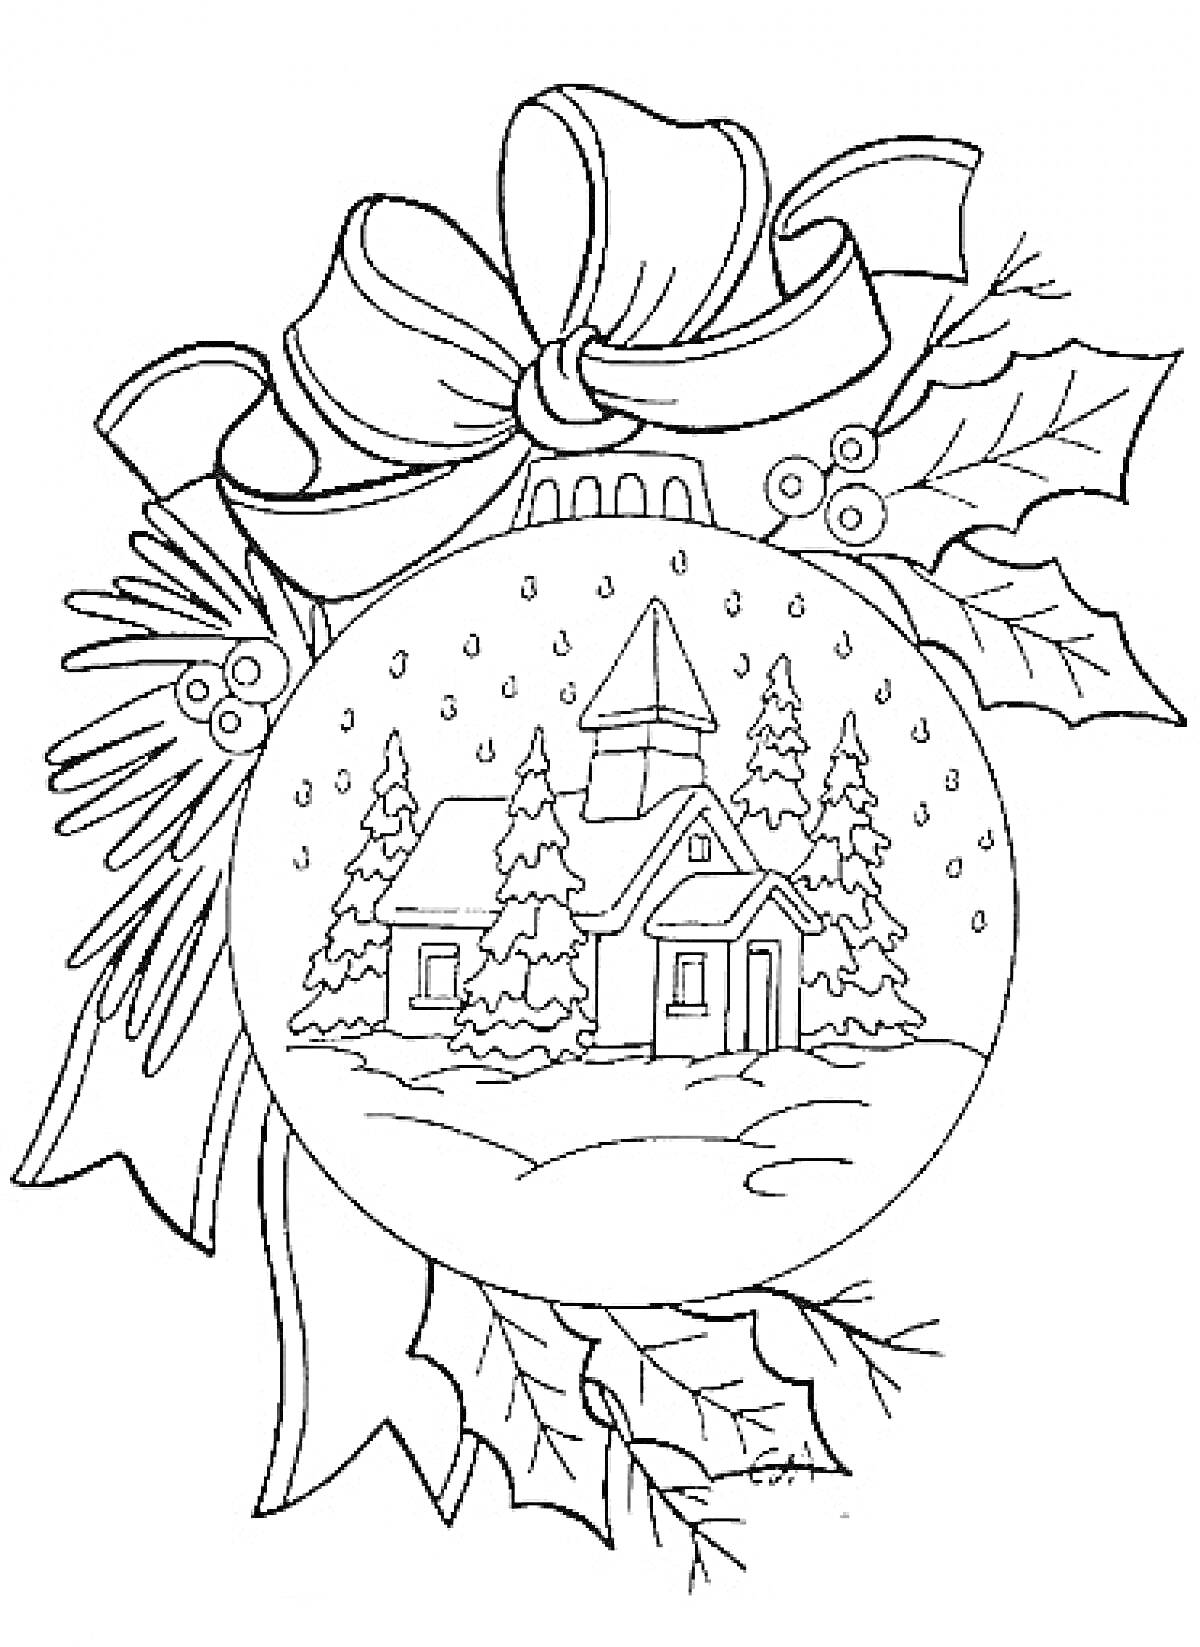 Новогодний шар с изображением деревенского домика, деревьев, снега, банта, еловых веток и листьев остролиста